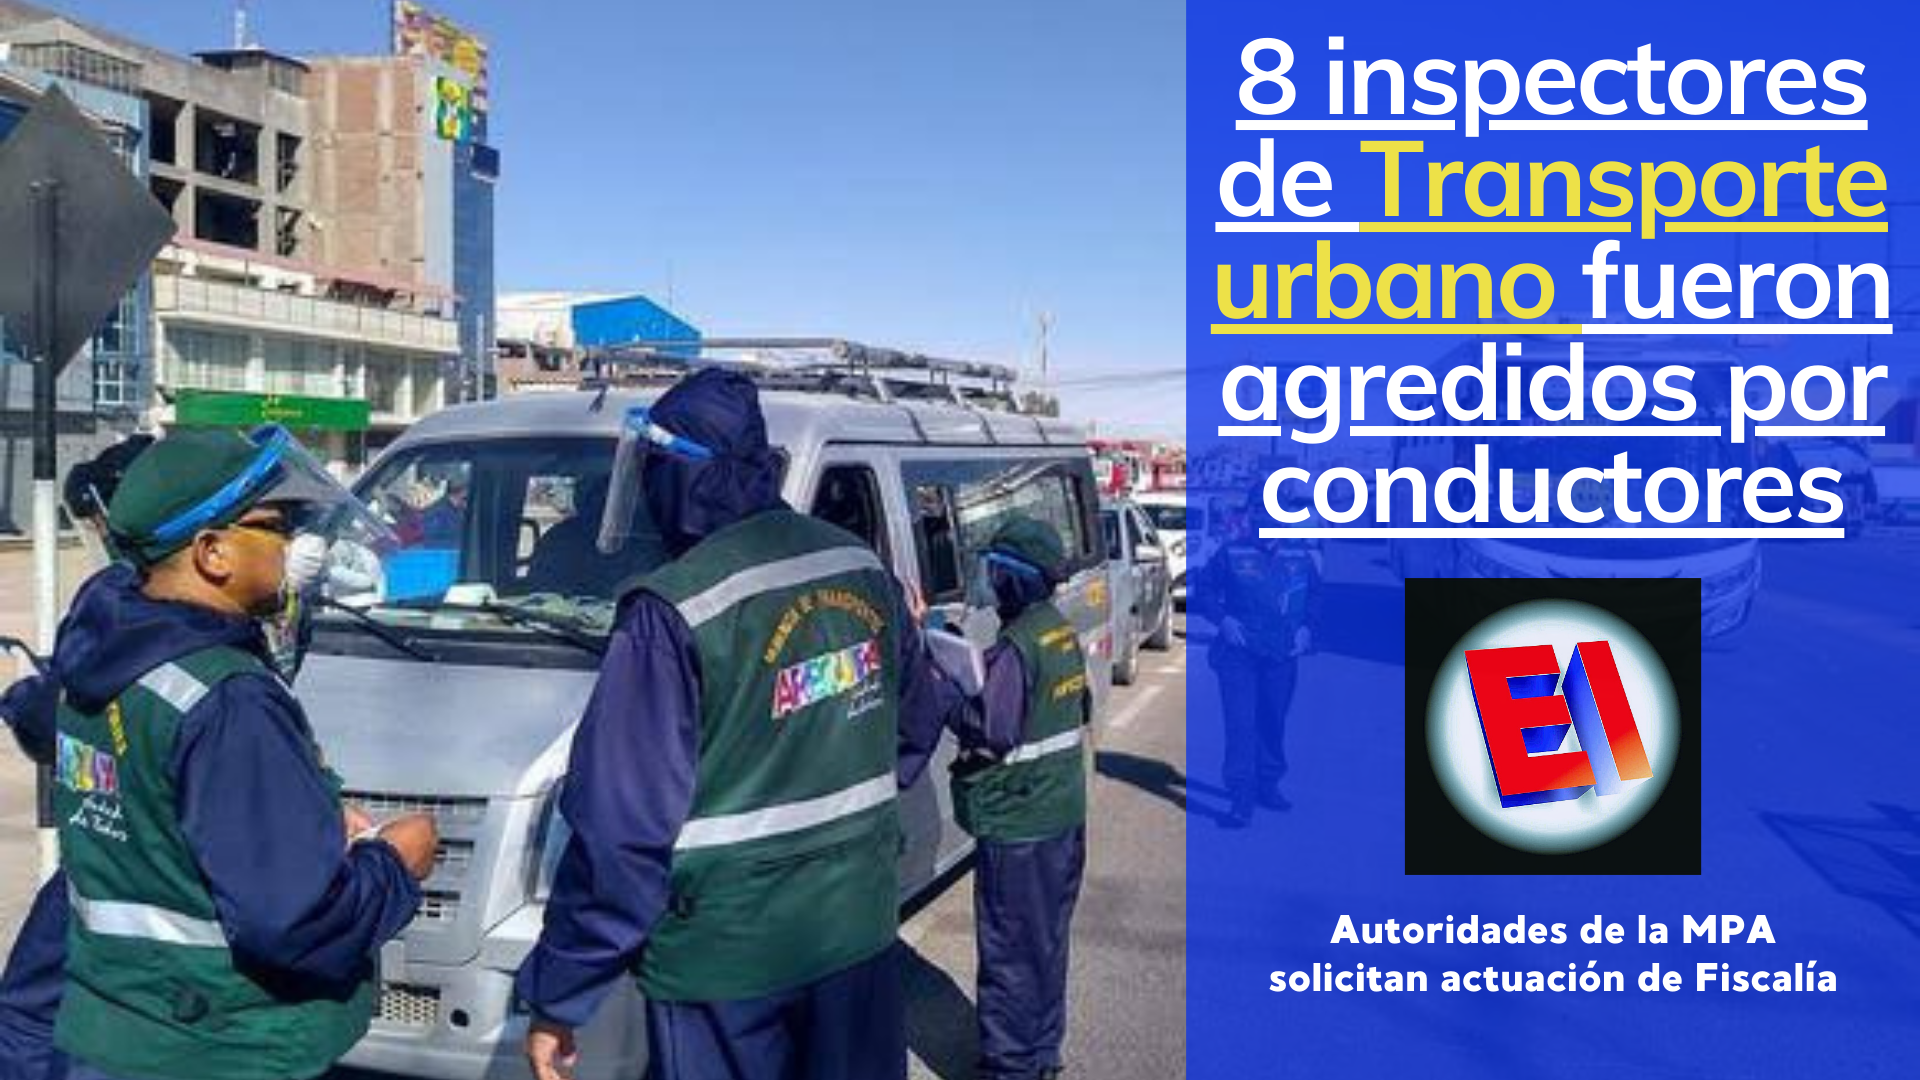 8 inspectores de transporte urbano de la MPA fueron agredidos por intervenidos el presente año